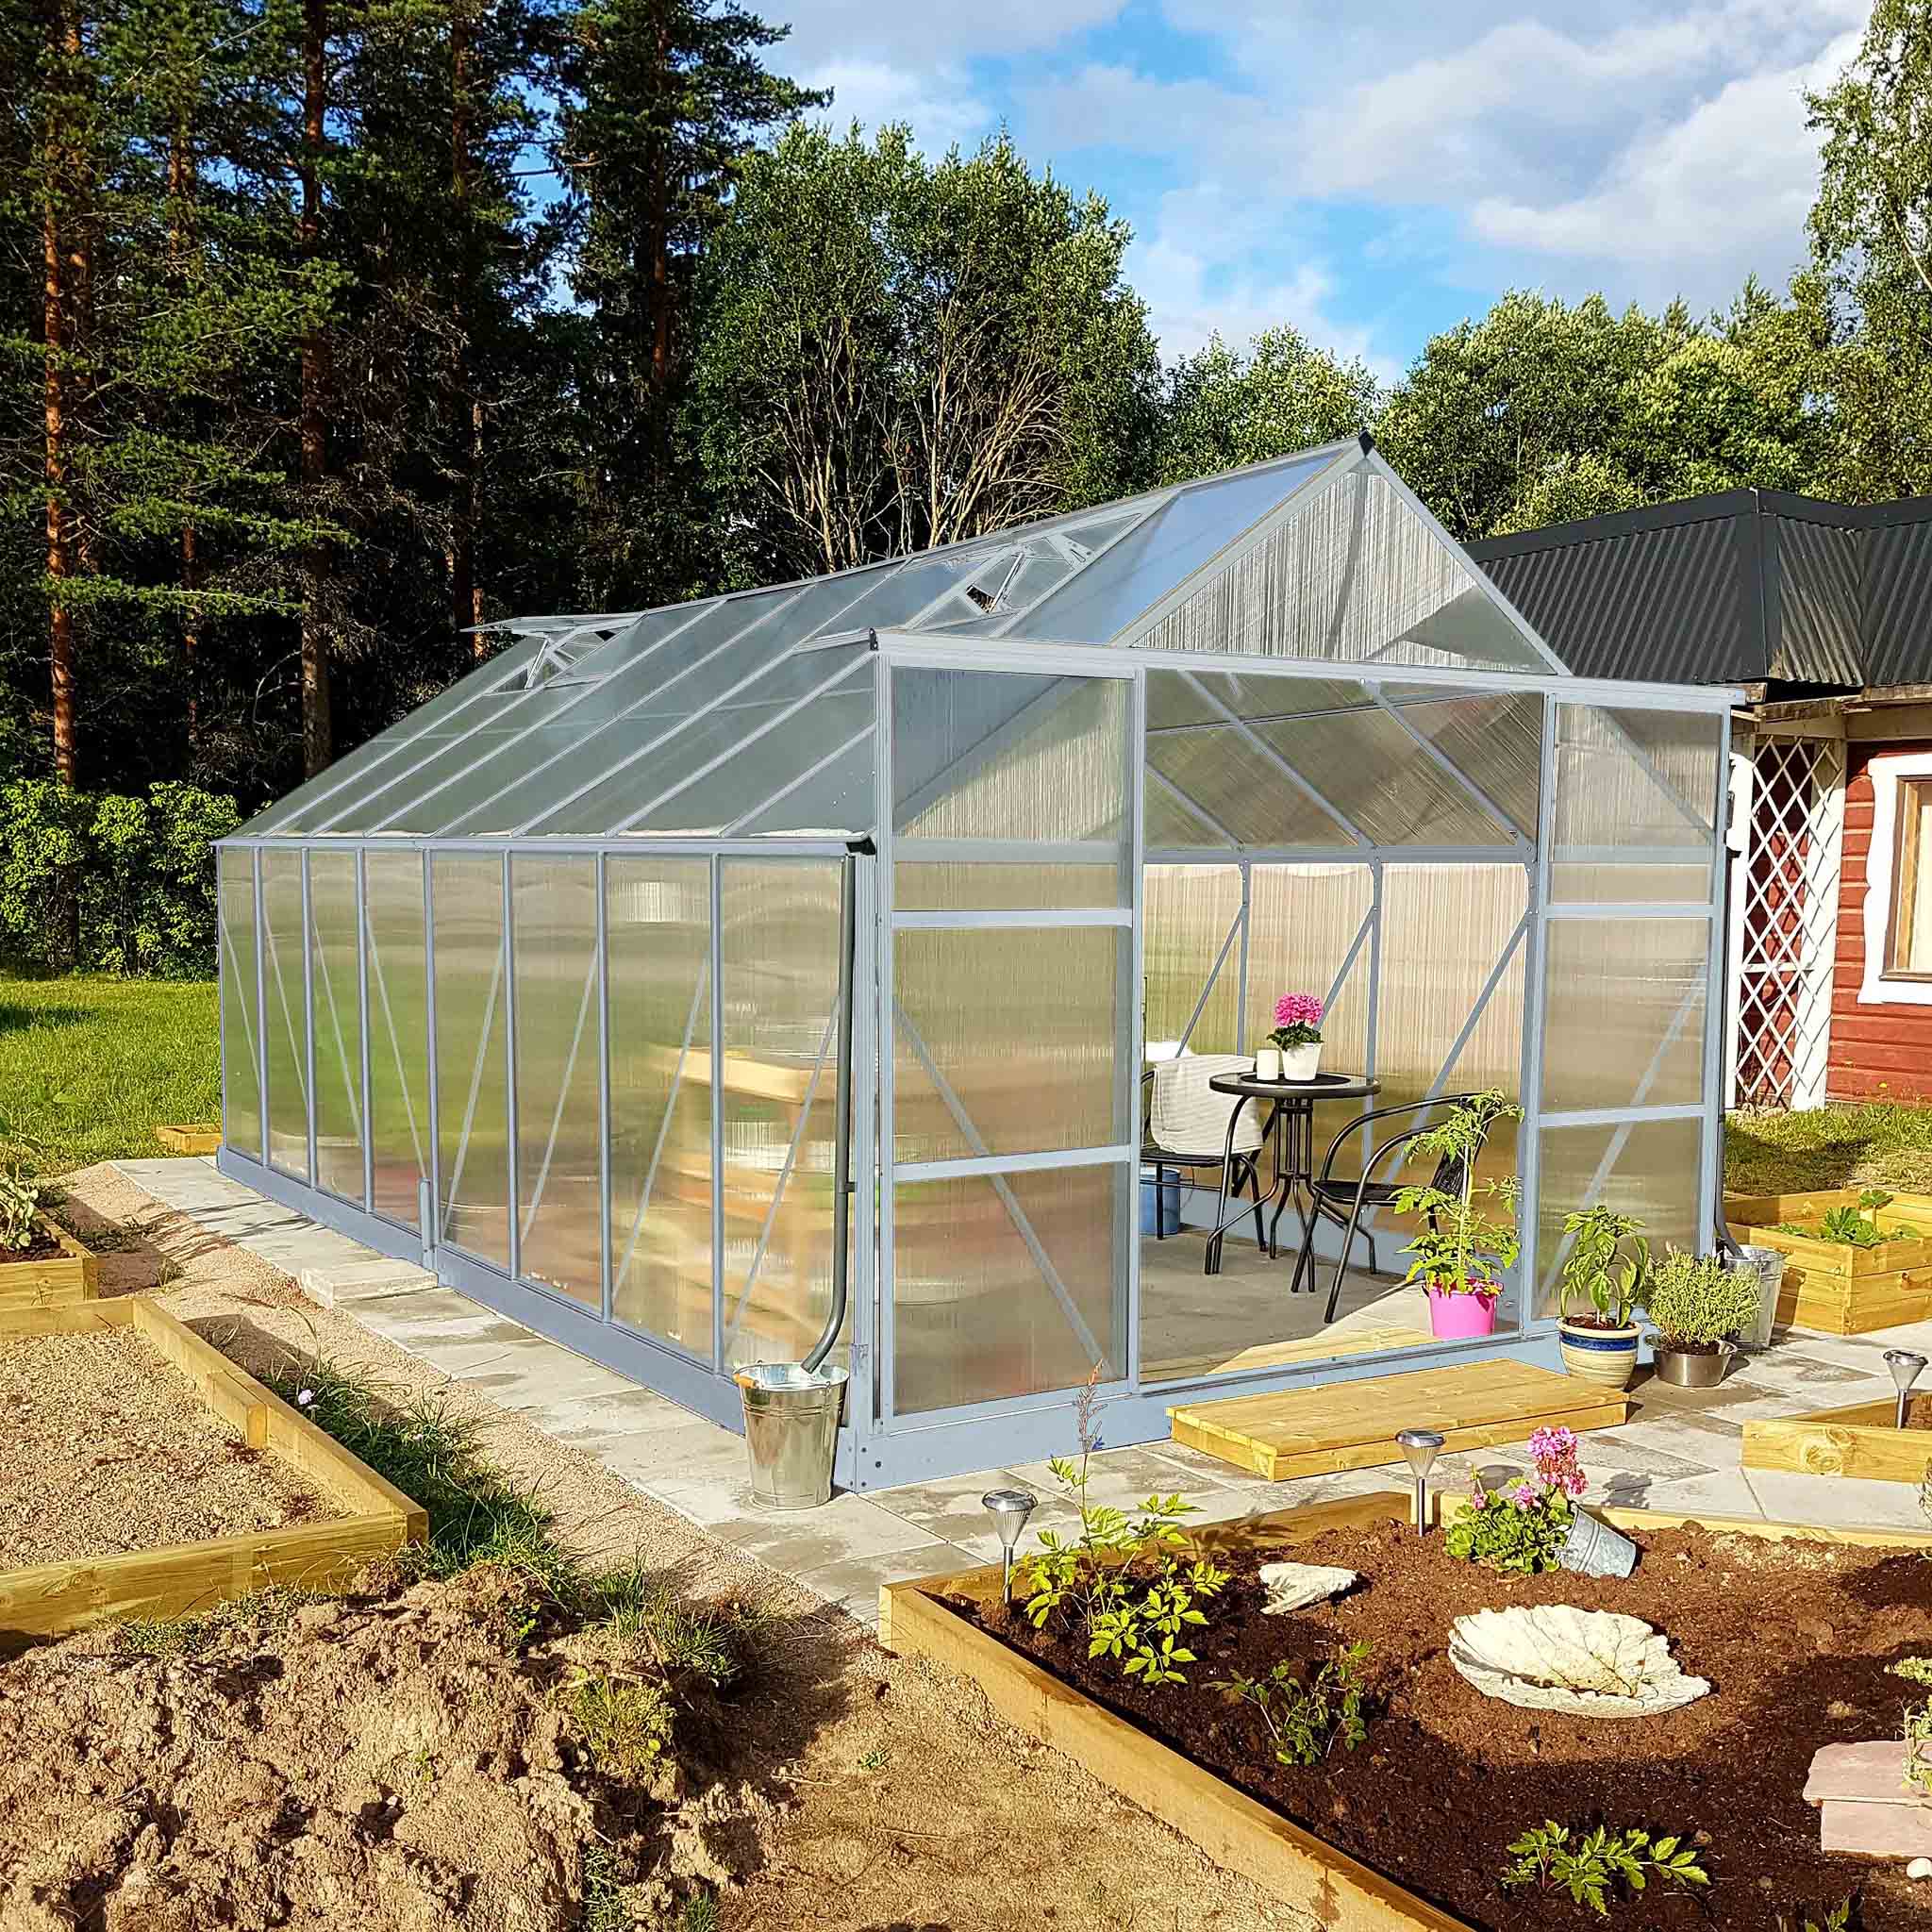 Växthus 18m² | Utökad odlingshöjd | Premium | 6mm kanalplast